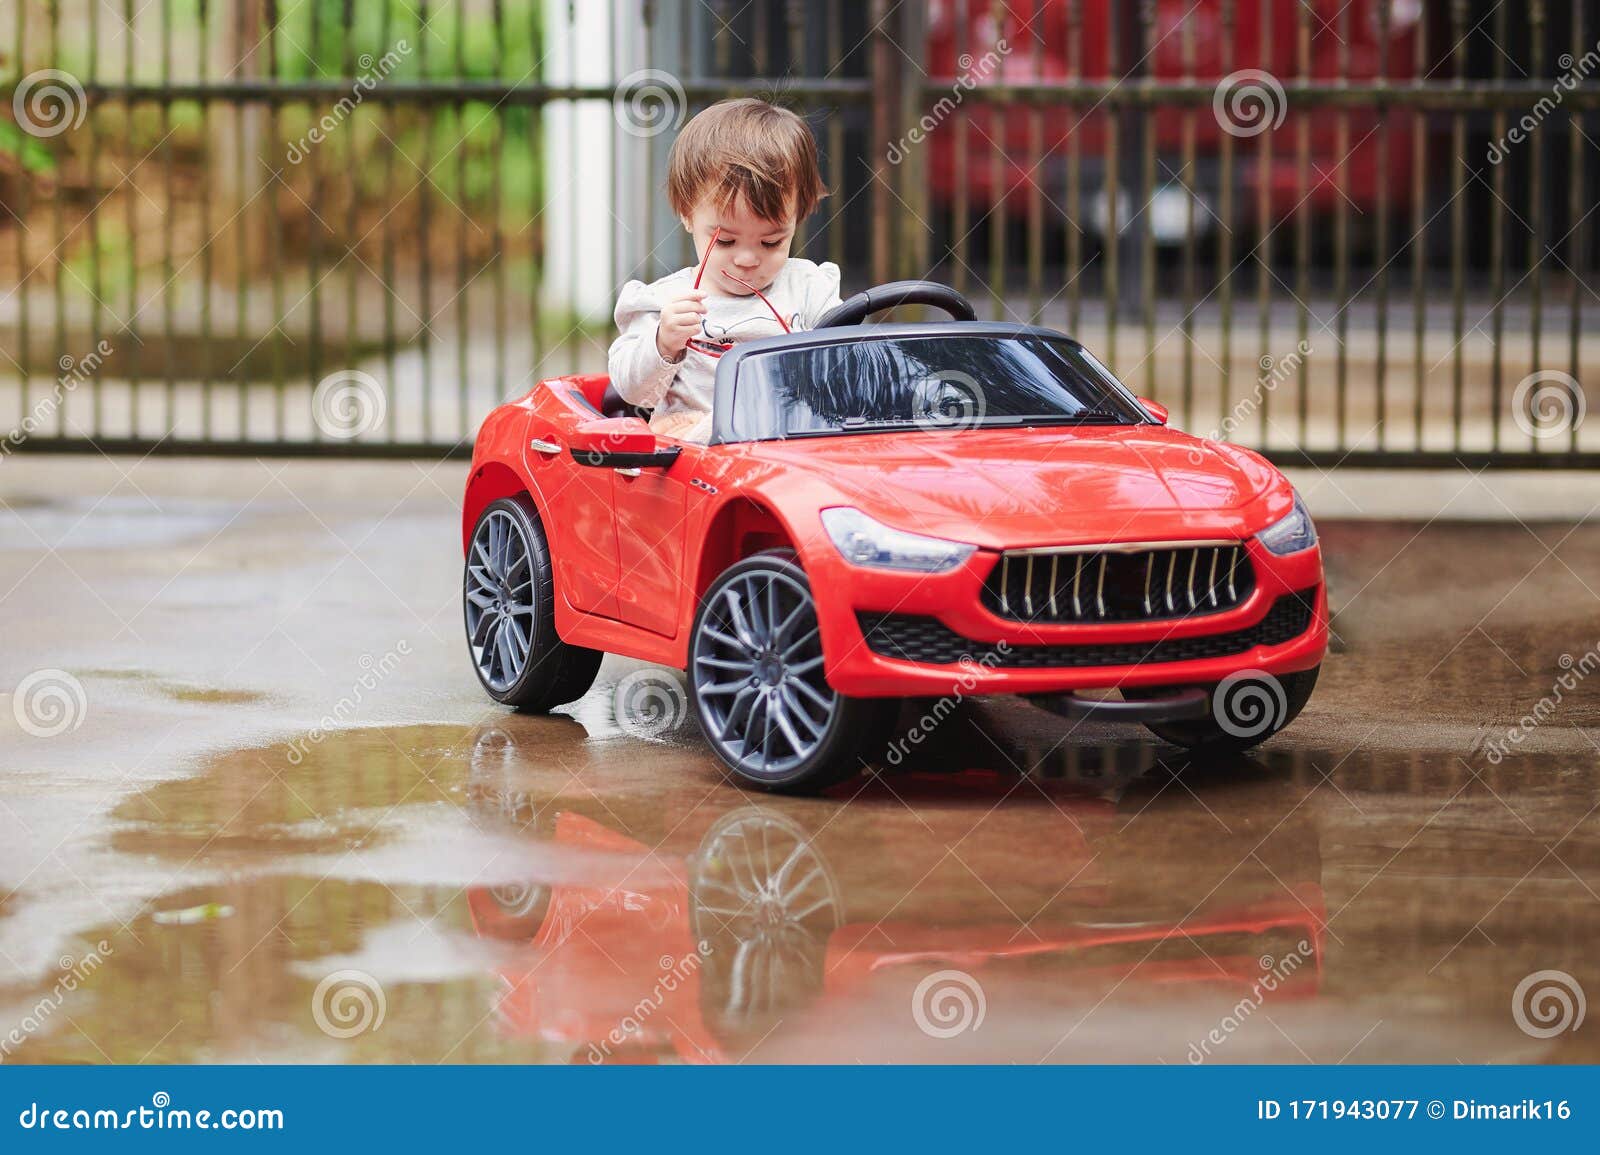 Fundo Os Carros De Brinquedo Das Crianças Se Envolvem Em Uma